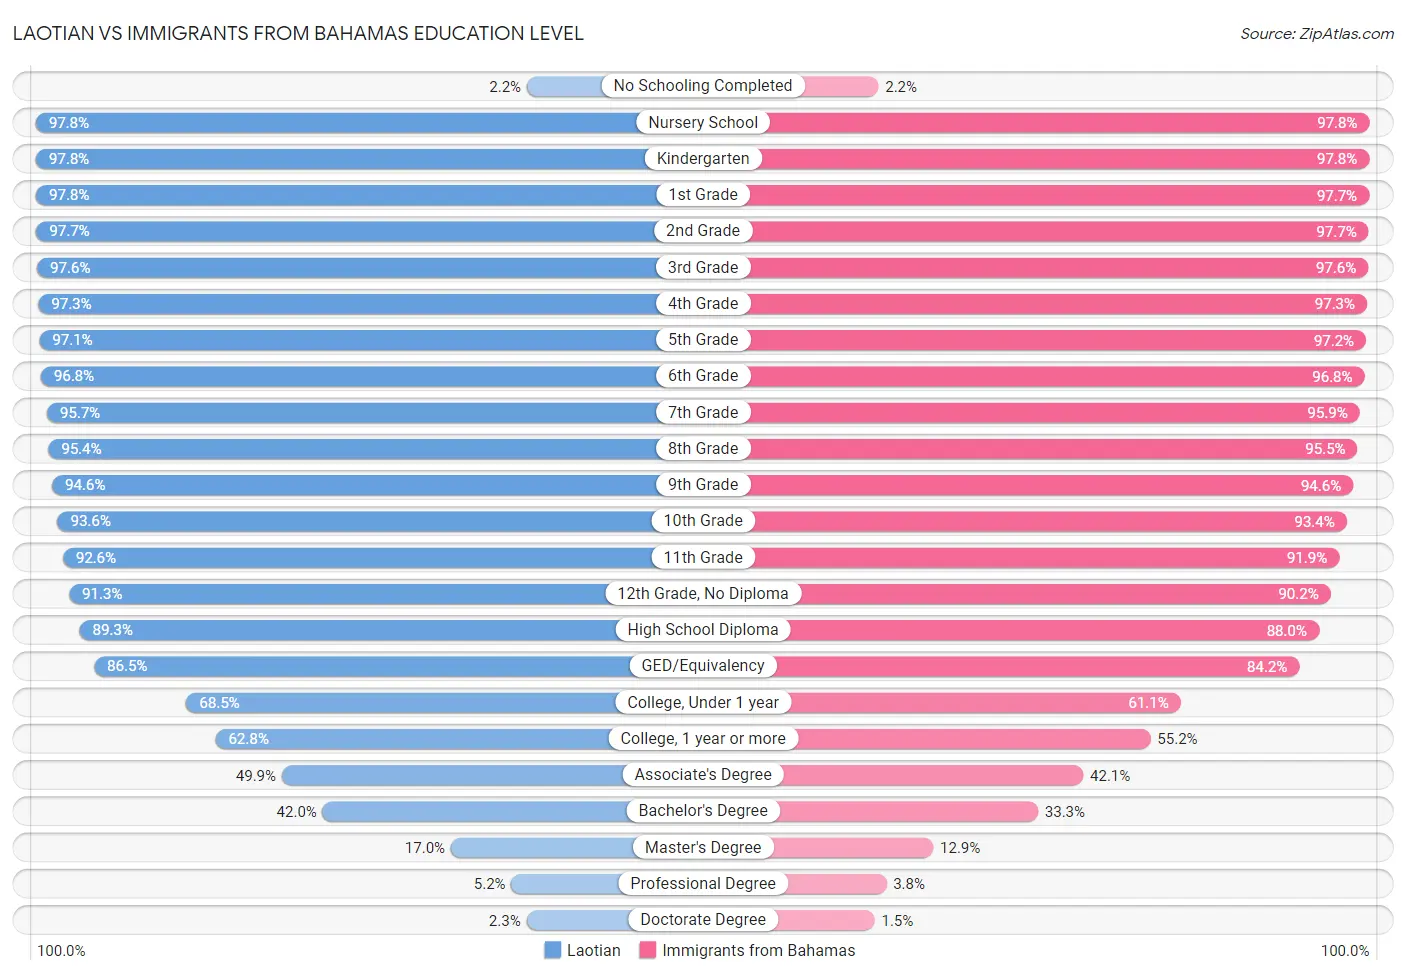 Laotian vs Immigrants from Bahamas Education Level